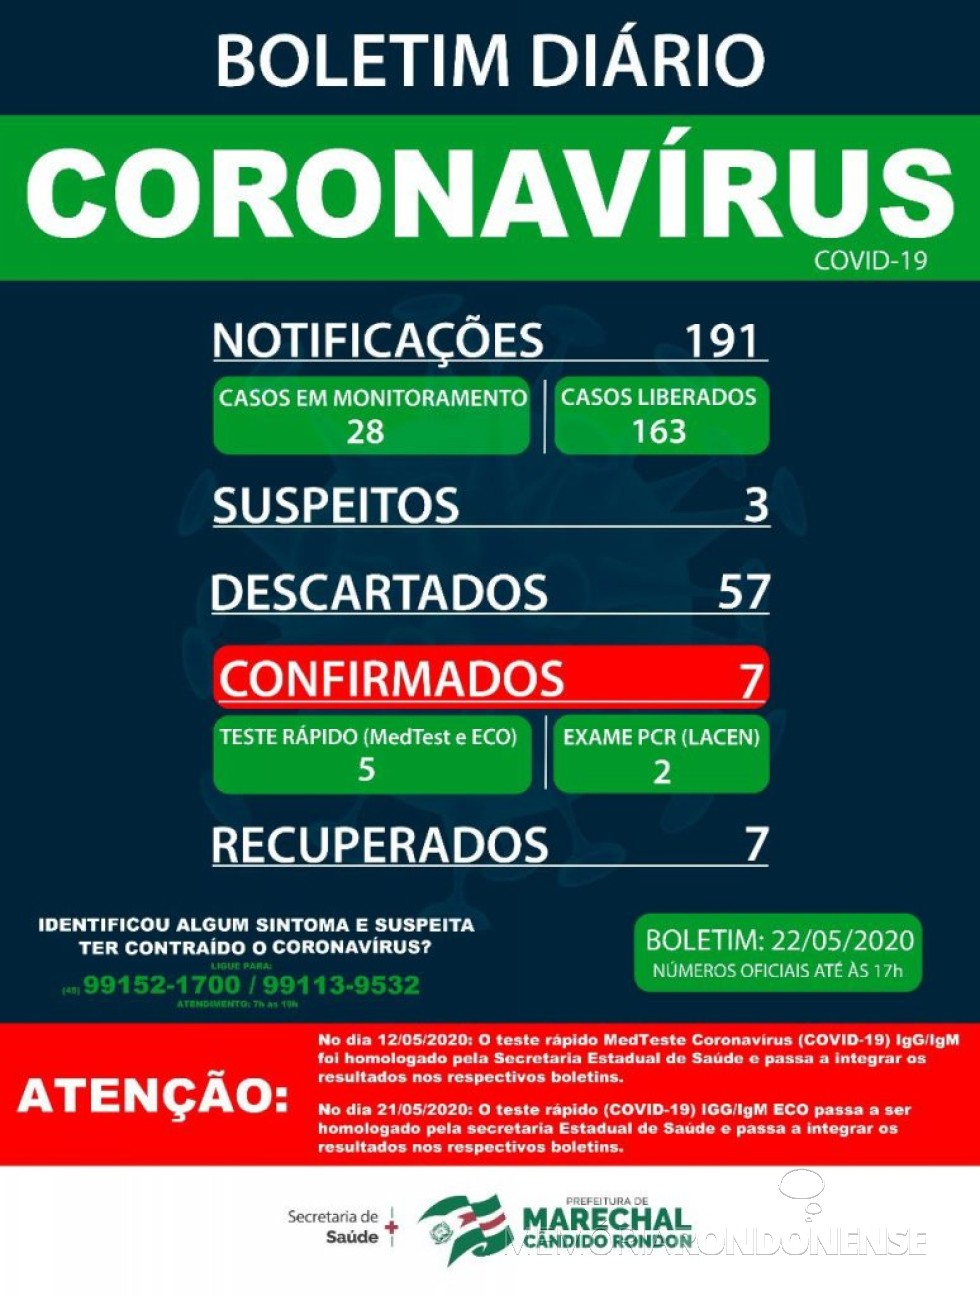 Boletim epidemiológico sobre  o quadro da pandemia do novo coronavírus em Marechal Cândido Rondon.
Imagem: Acervo Imprensa PM-MCR - FOTO 17 - 